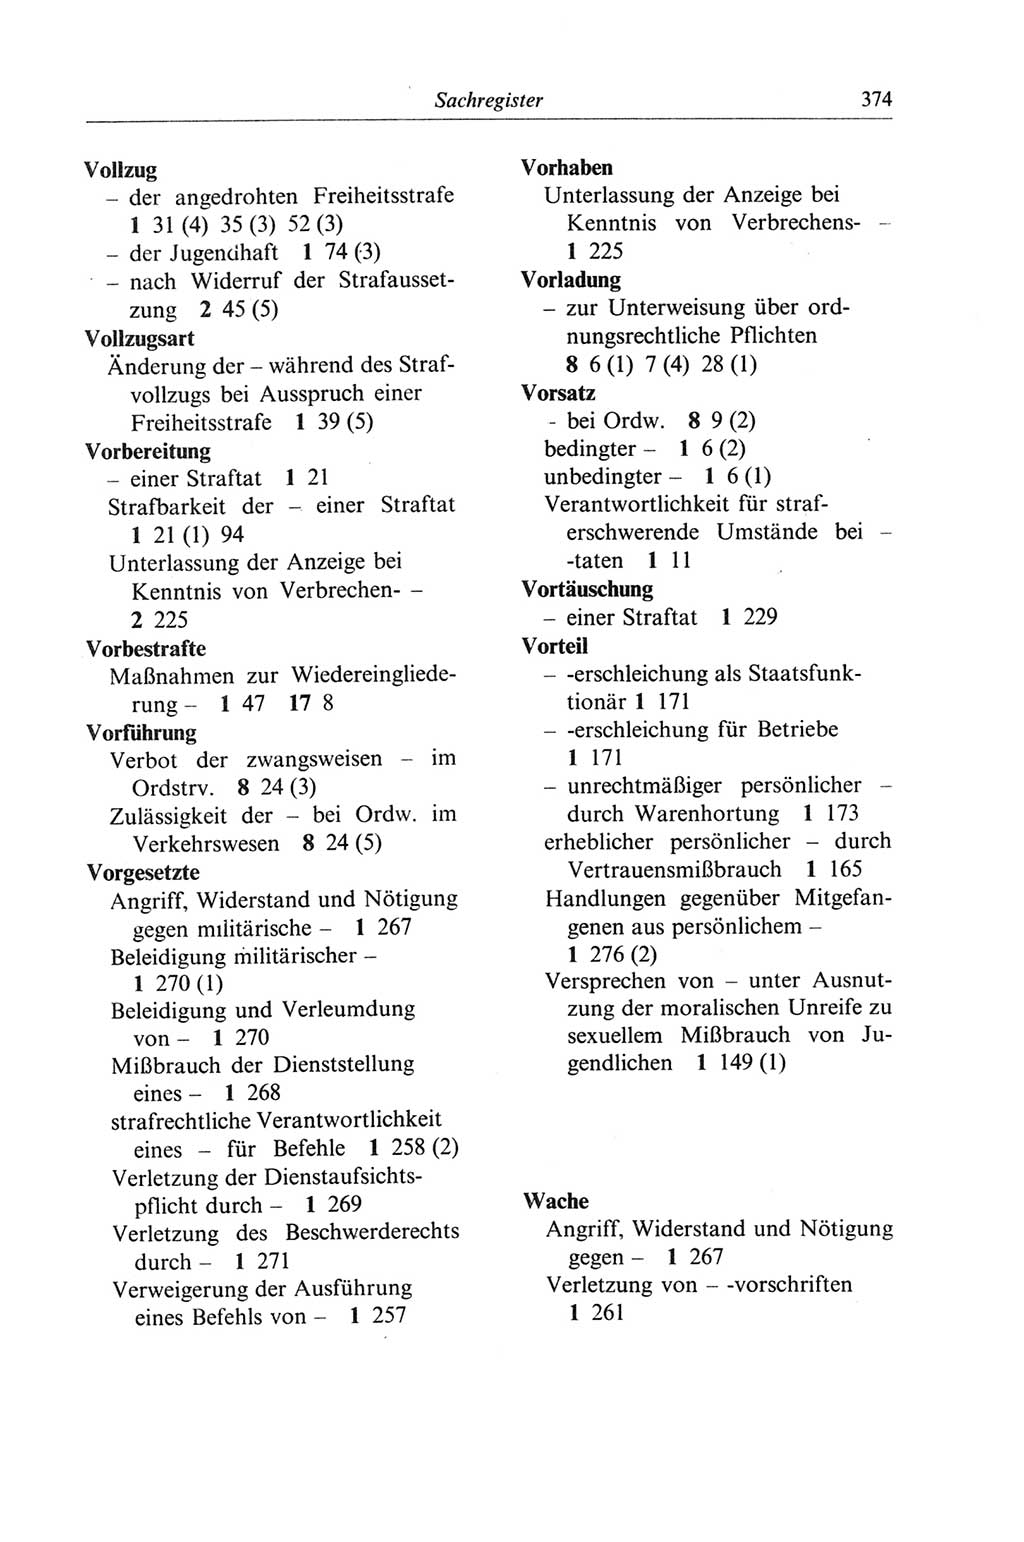 Strafgesetzbuch (StGB) der Deutschen Demokratischen Republik (DDR) und angrenzende Gesetze und Bestimmungen 1968, Seite 374 (StGB Ges. Best. DDR 1968, S. 374)